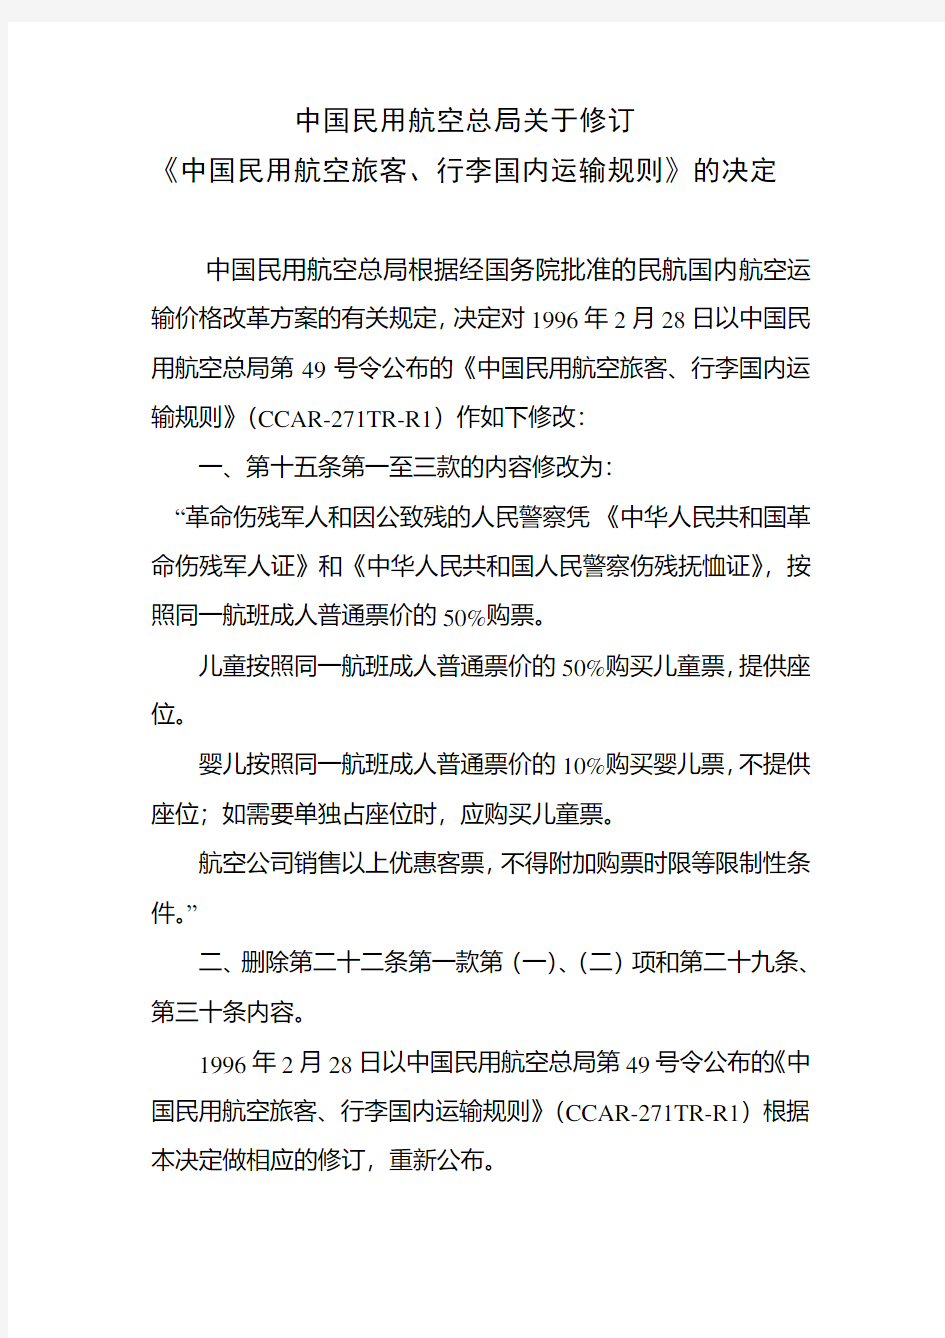 CCAR-271TR-R2中国民用航空总局关于修订〈中国民用航空旅客、行李国内运输规则〉的决定